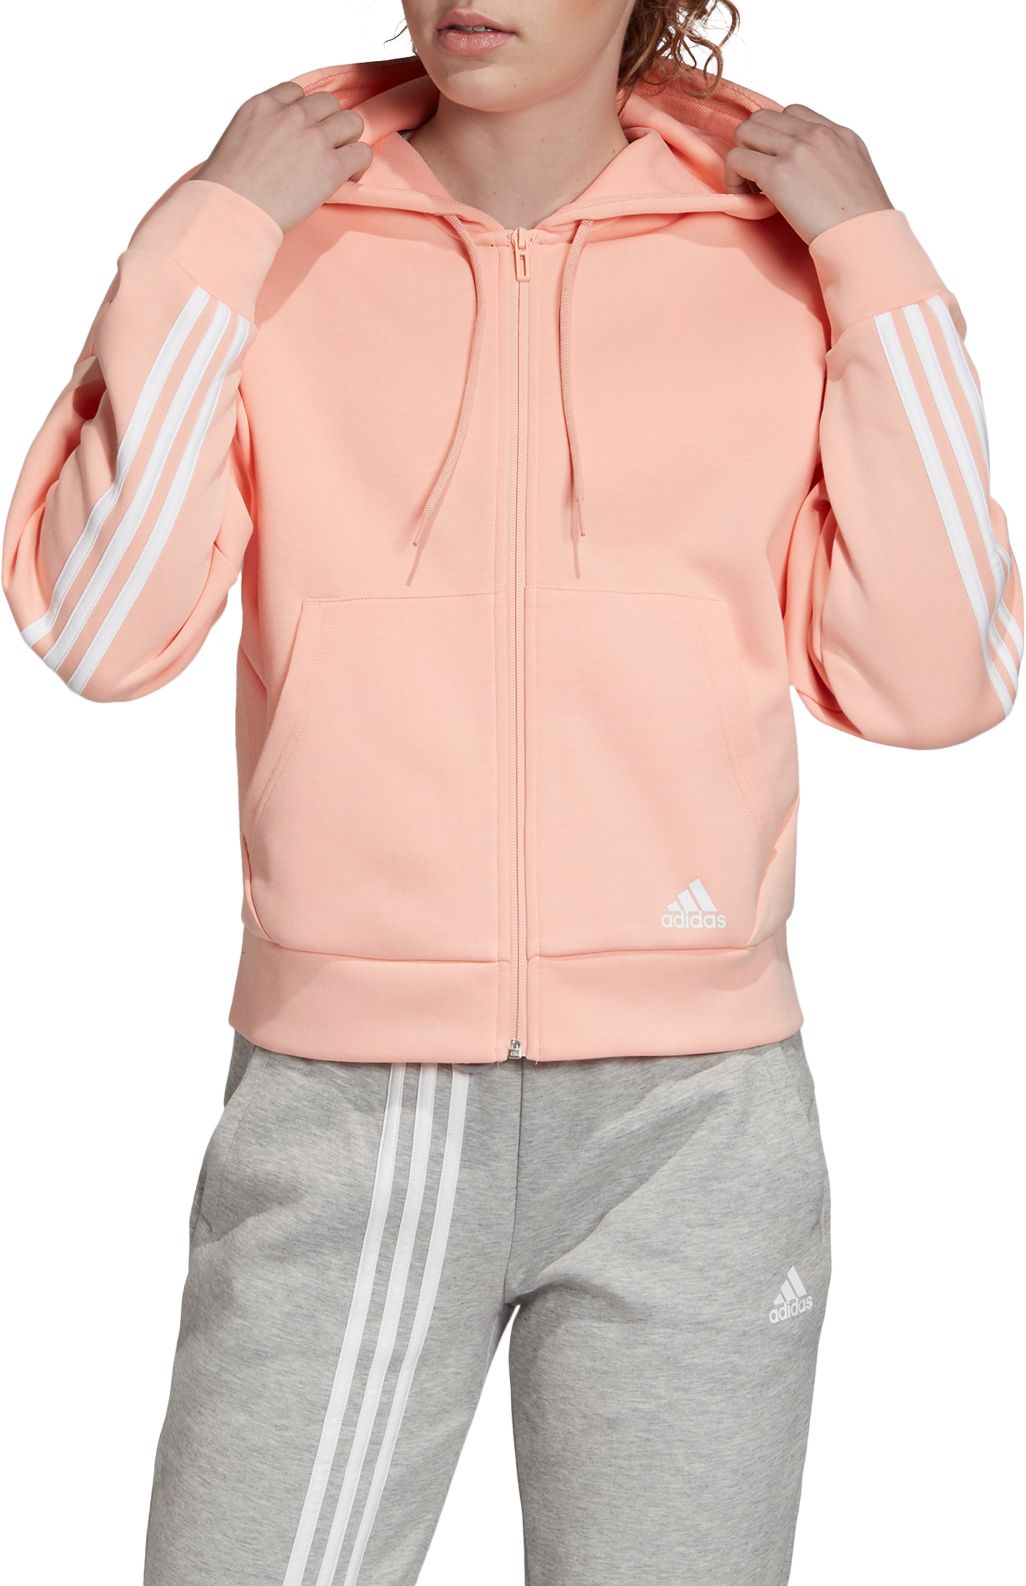 adidas three stripe zip up hoodie